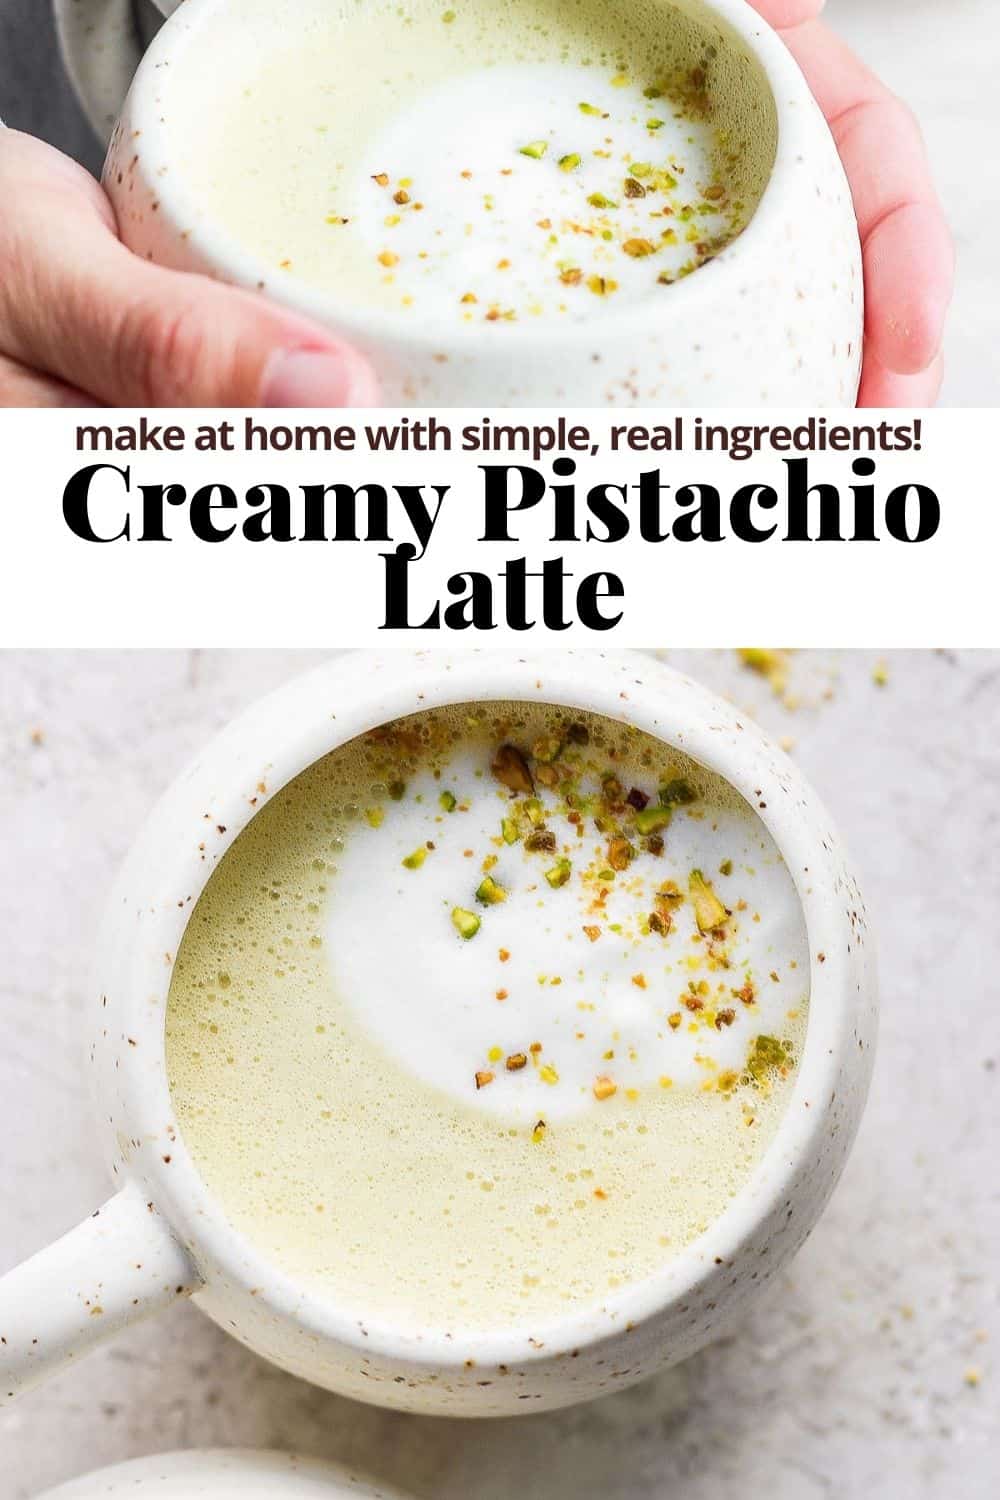 Pinterest image for a pistachio latte.